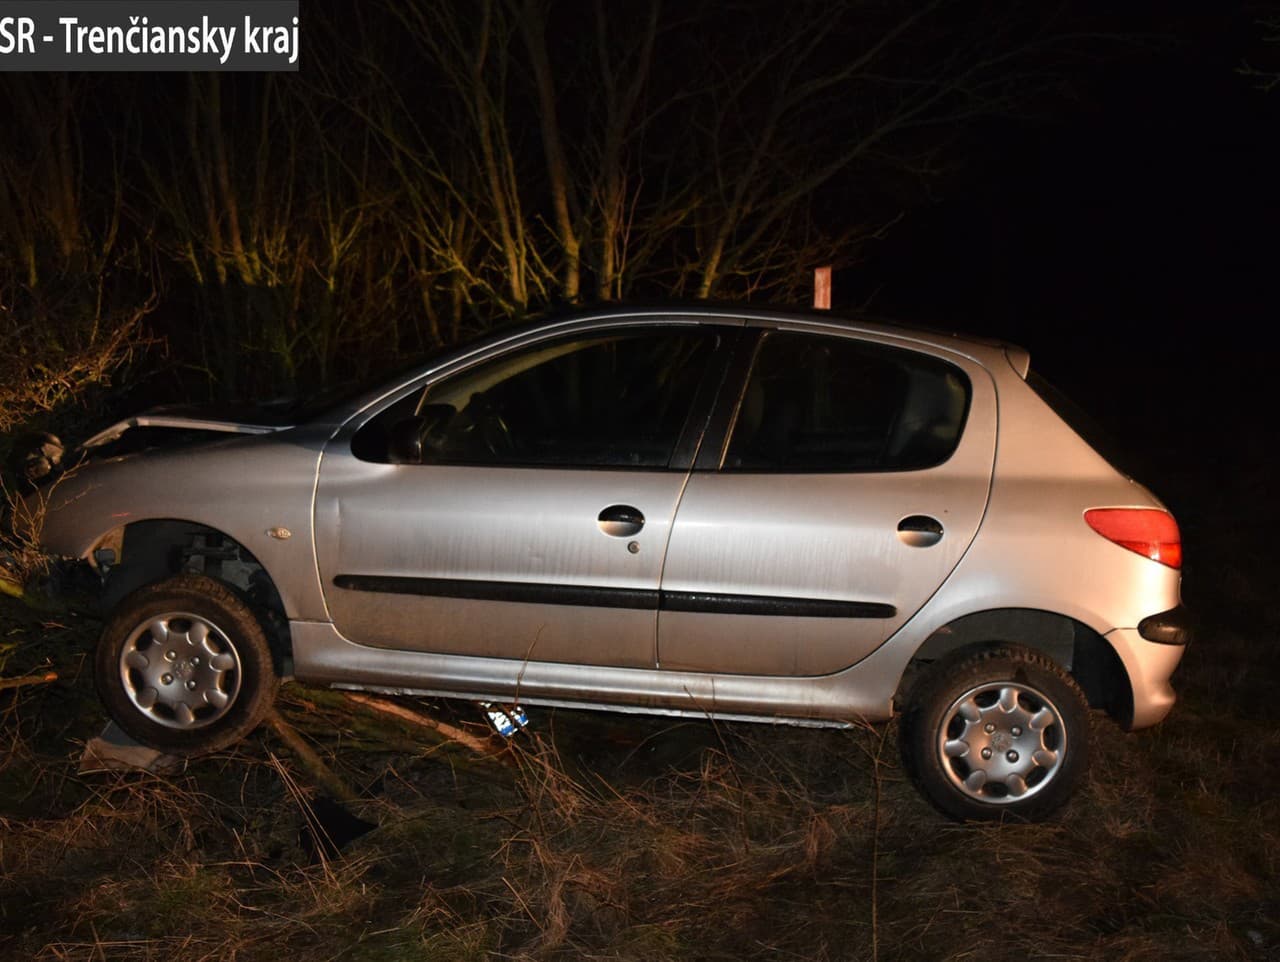 36-ročný muž ukradol auto a opitý havaroval